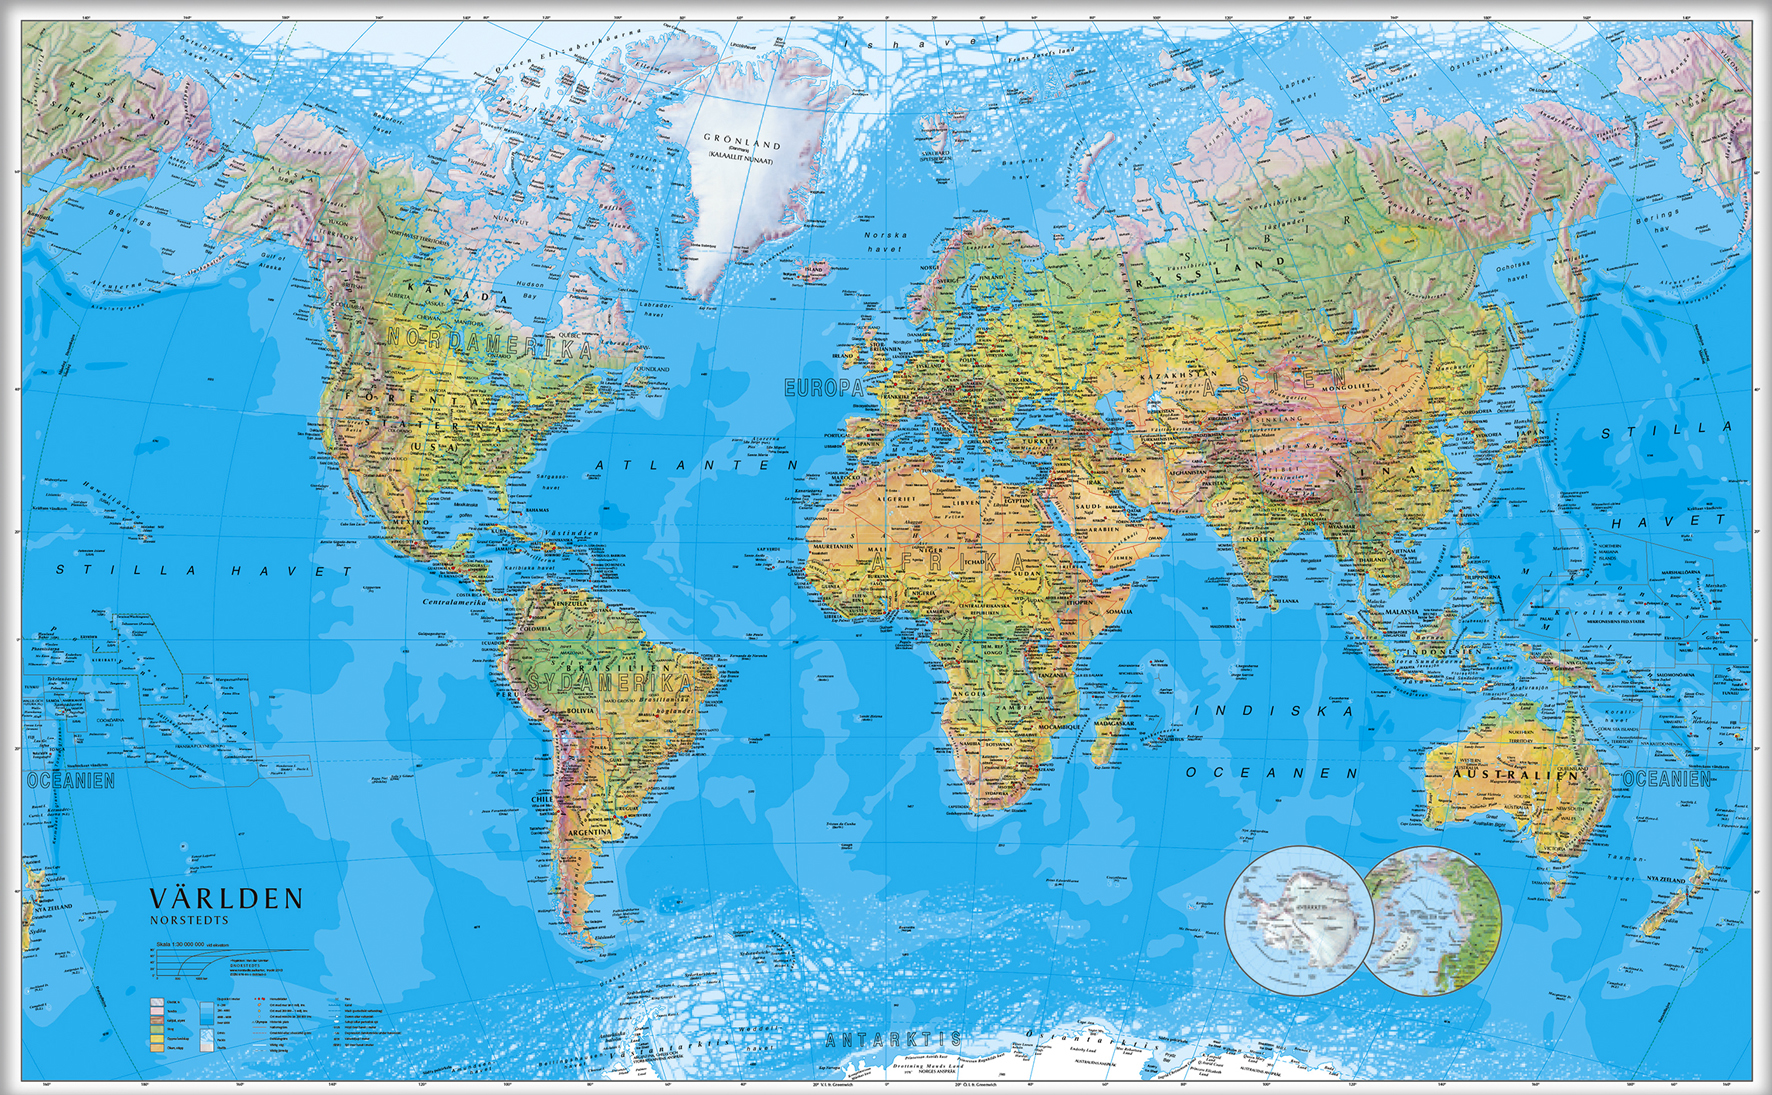 [2714625] Världskarta 1:30milj  137x85cm